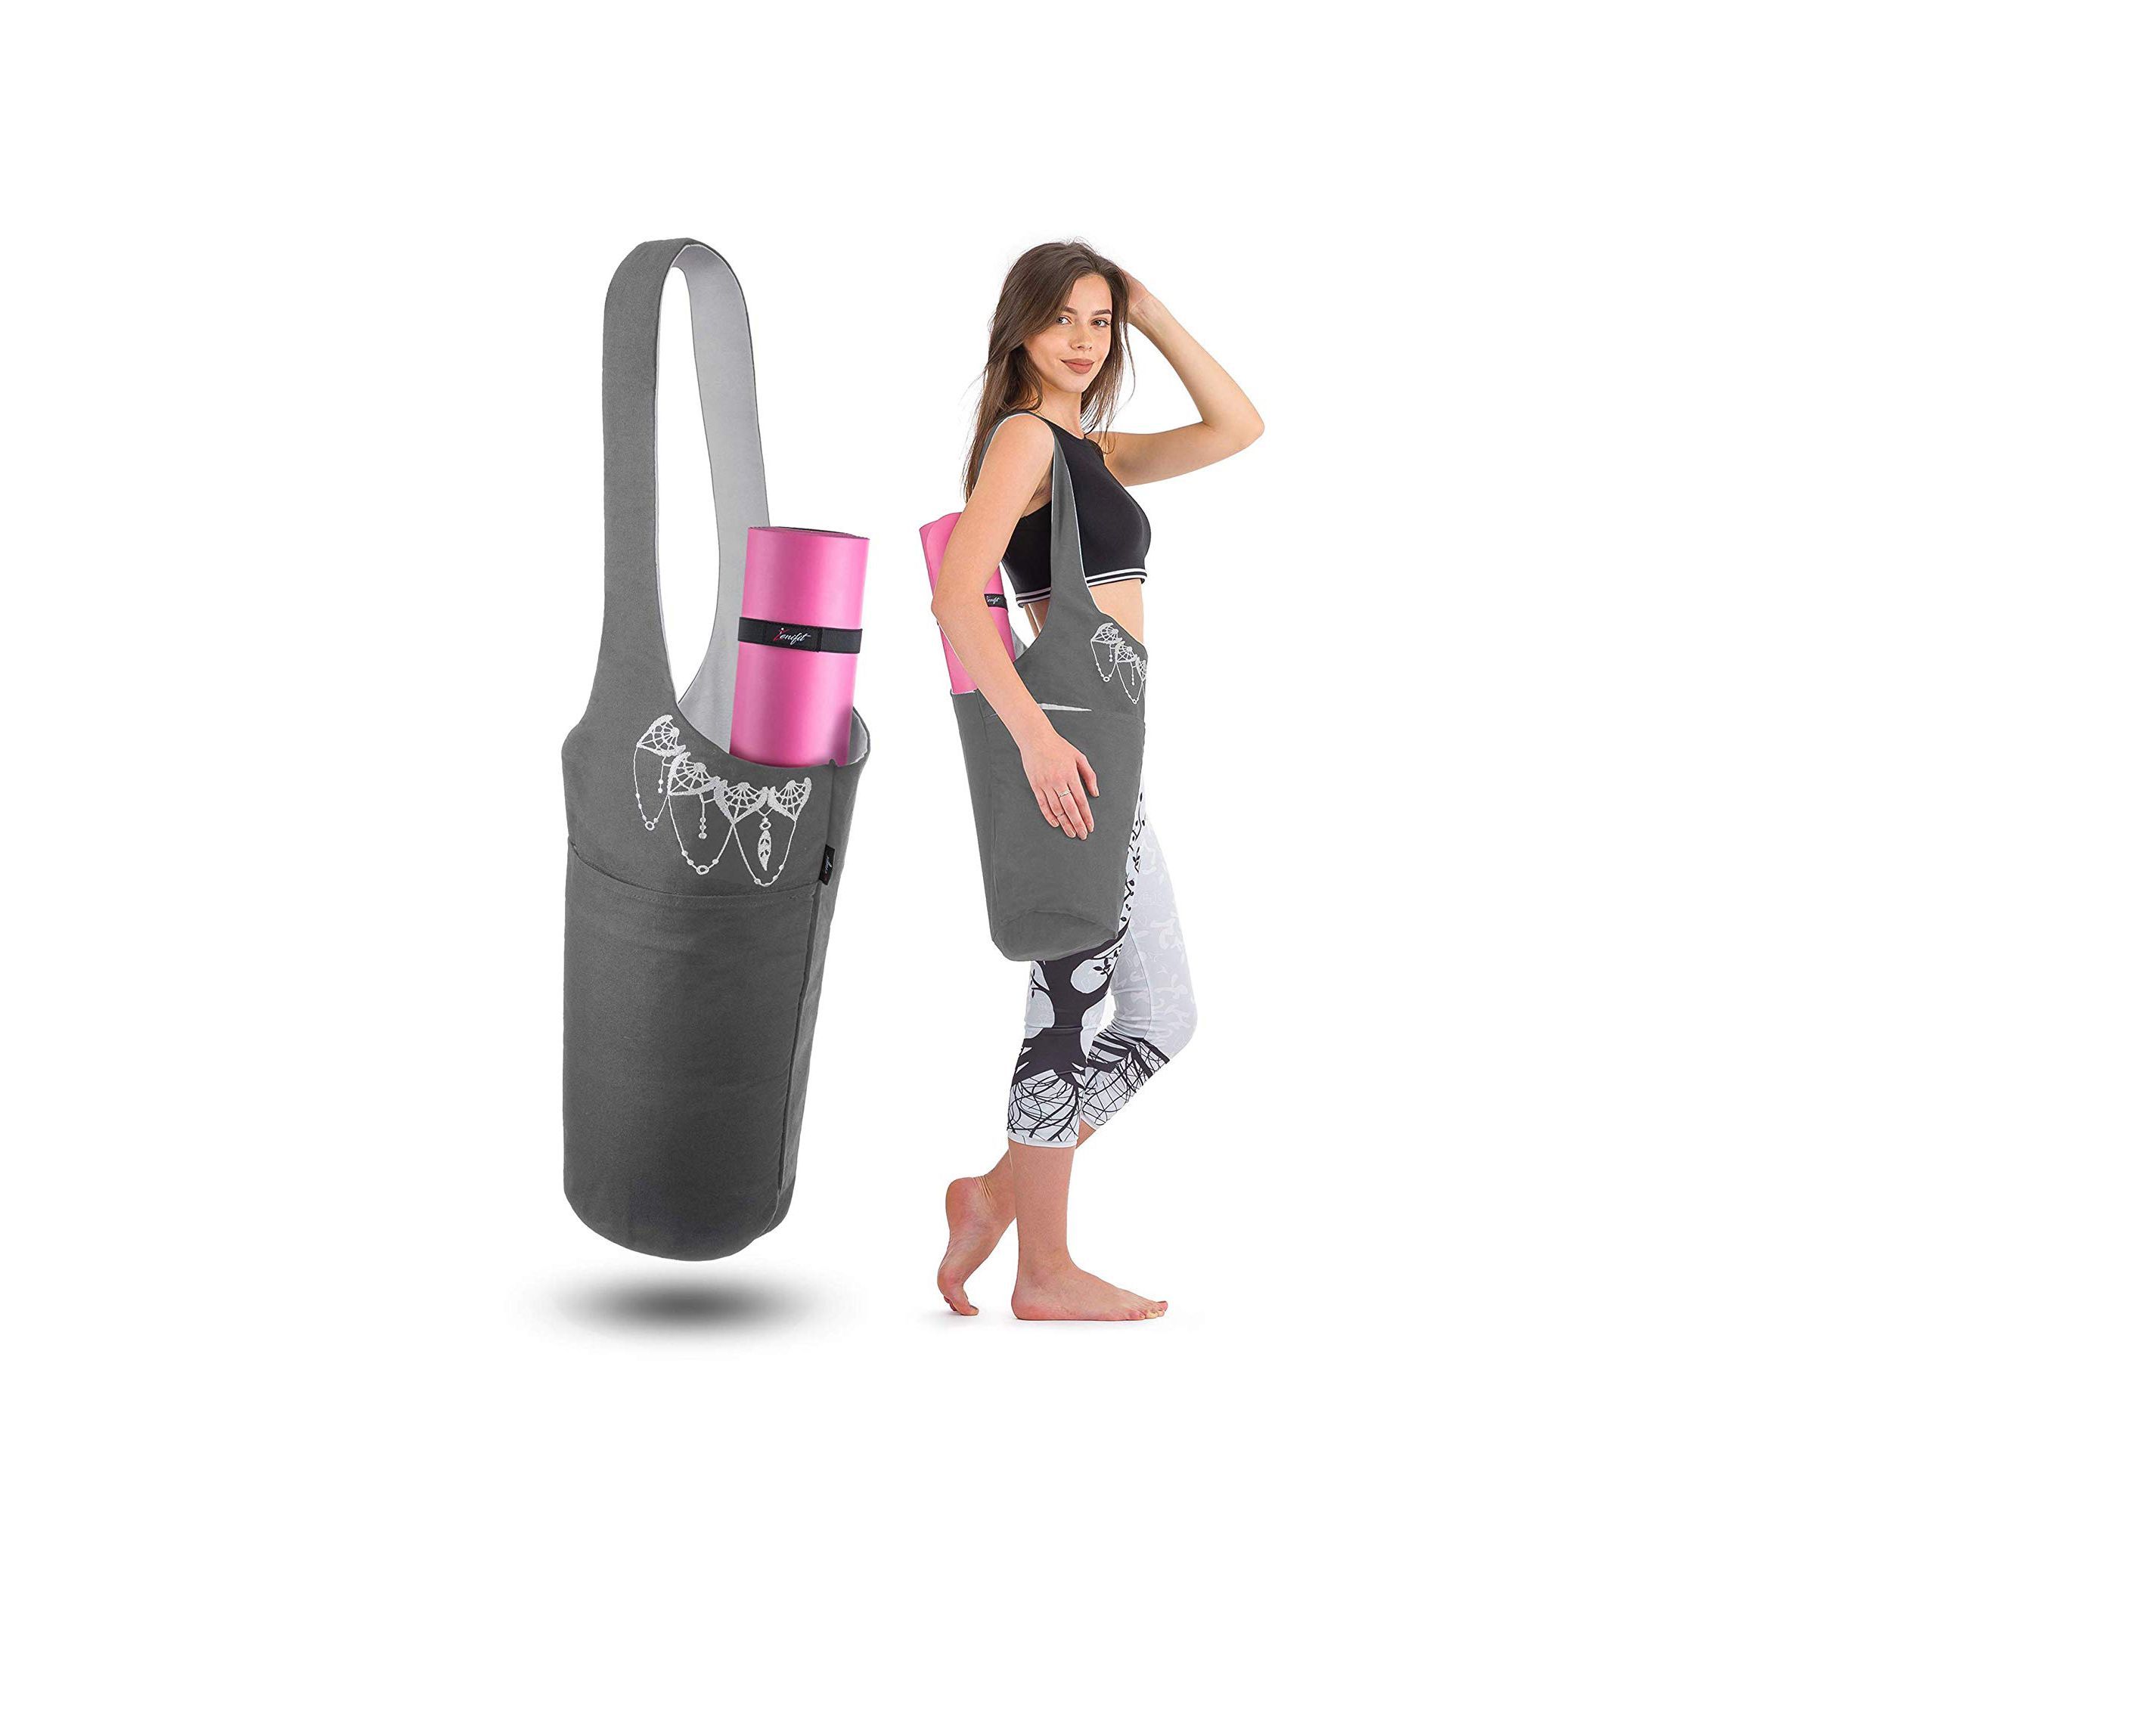 Makes Easy Mat Carrying Simple Yoga Mat Tote Side Pocket w/Zipper Yoga Yoga Mat Bag for Women & Men 